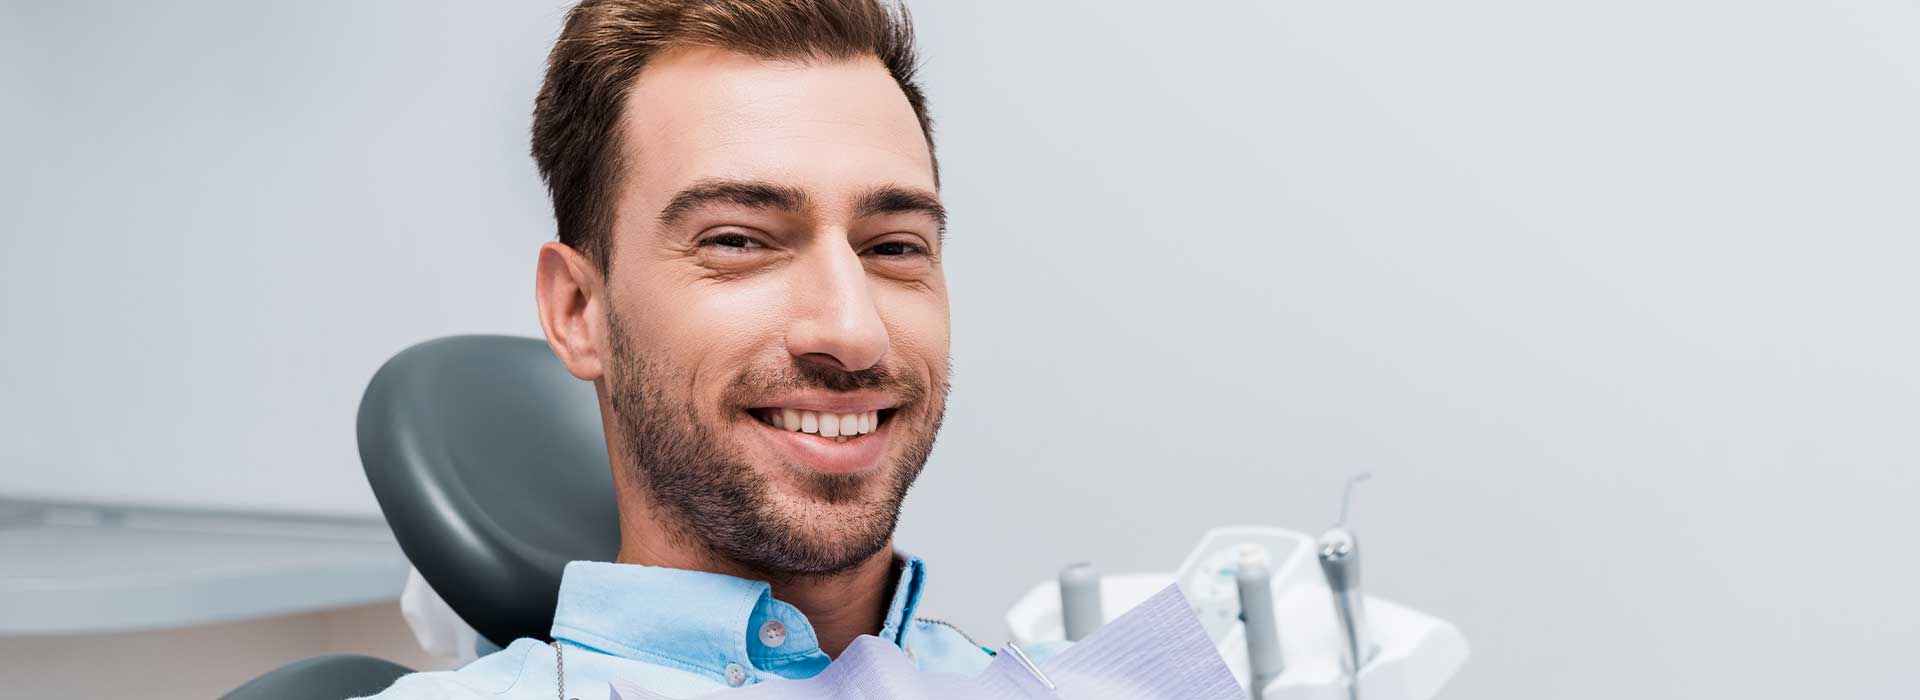 Handsome man smiling at dental